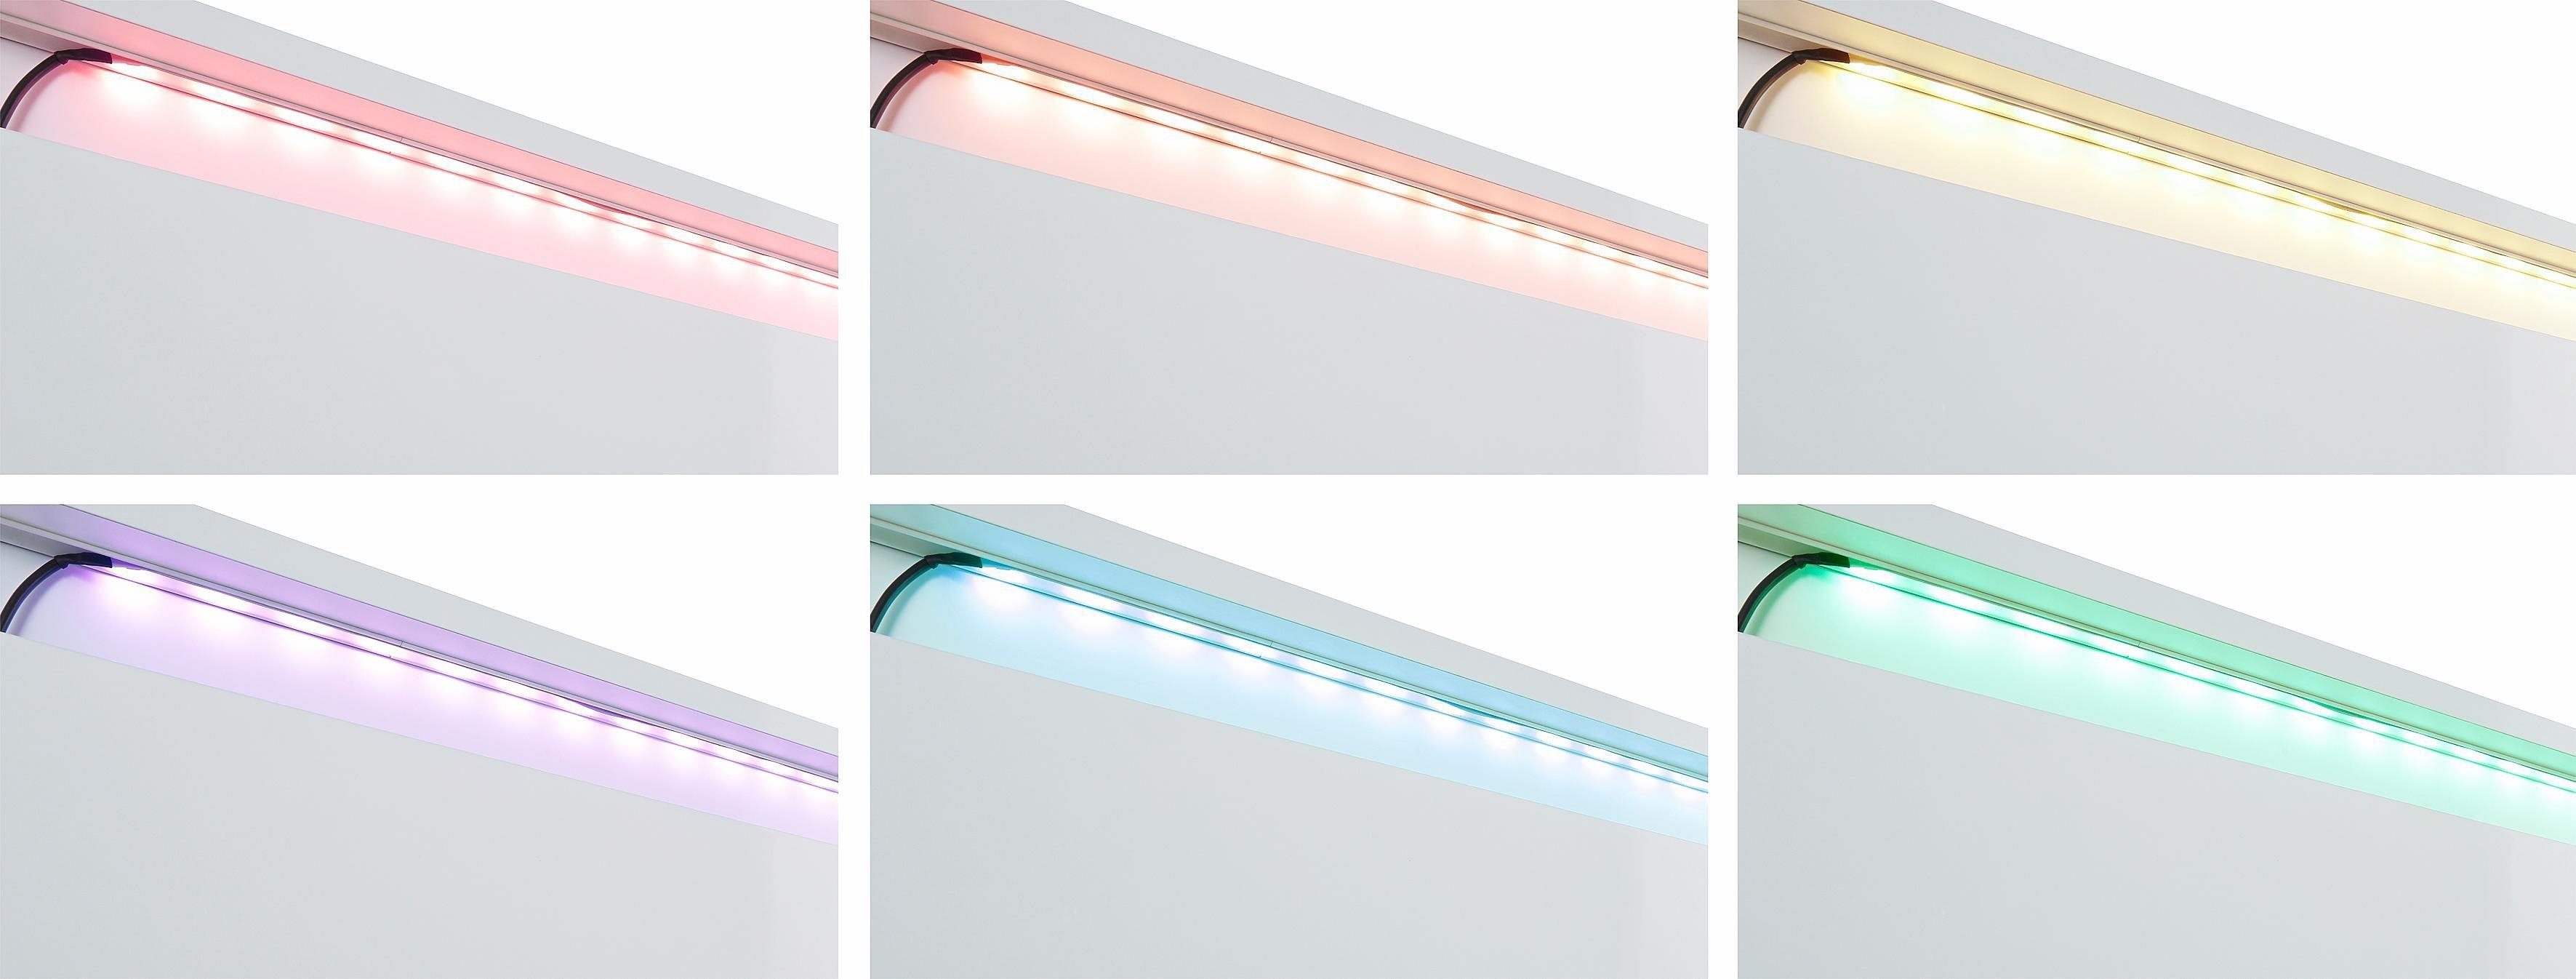 fest LED Farbwechsler, Knopf-Farbsteuerung mit LED integriert, Schrankinnenraumbeleuchtung,